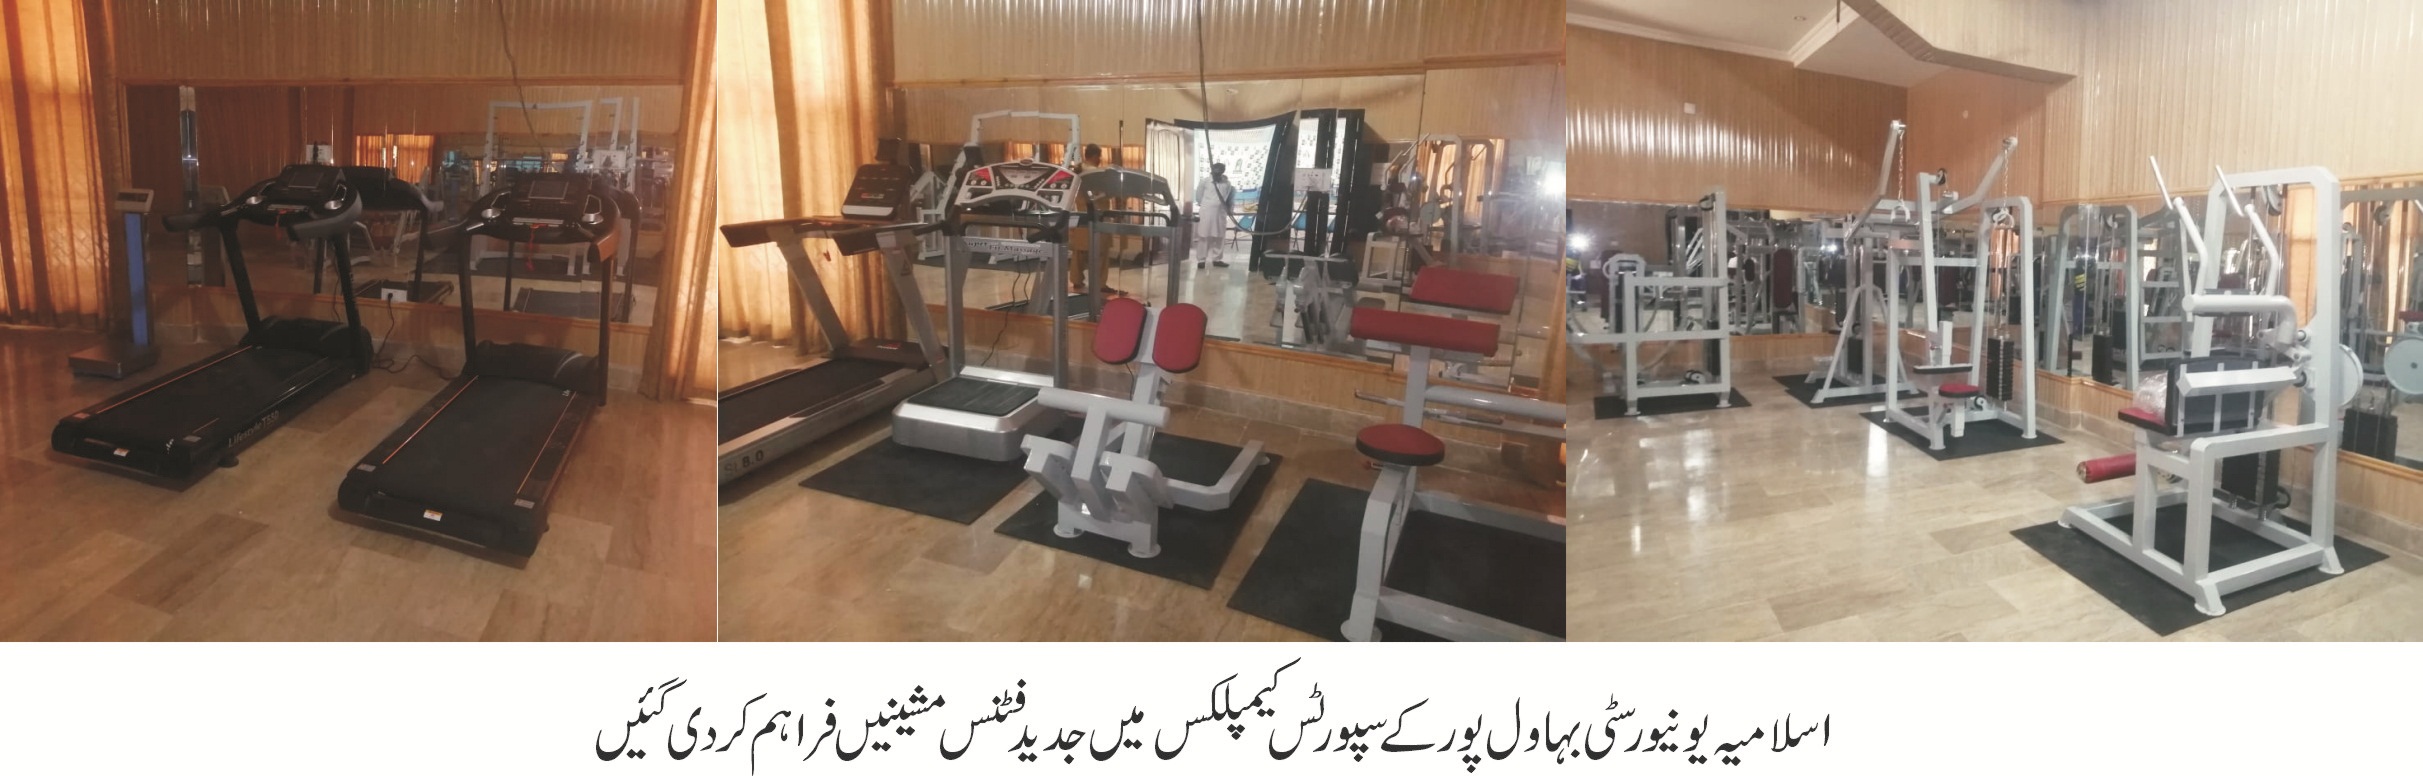 Fitness machines of IUB Sports Complex